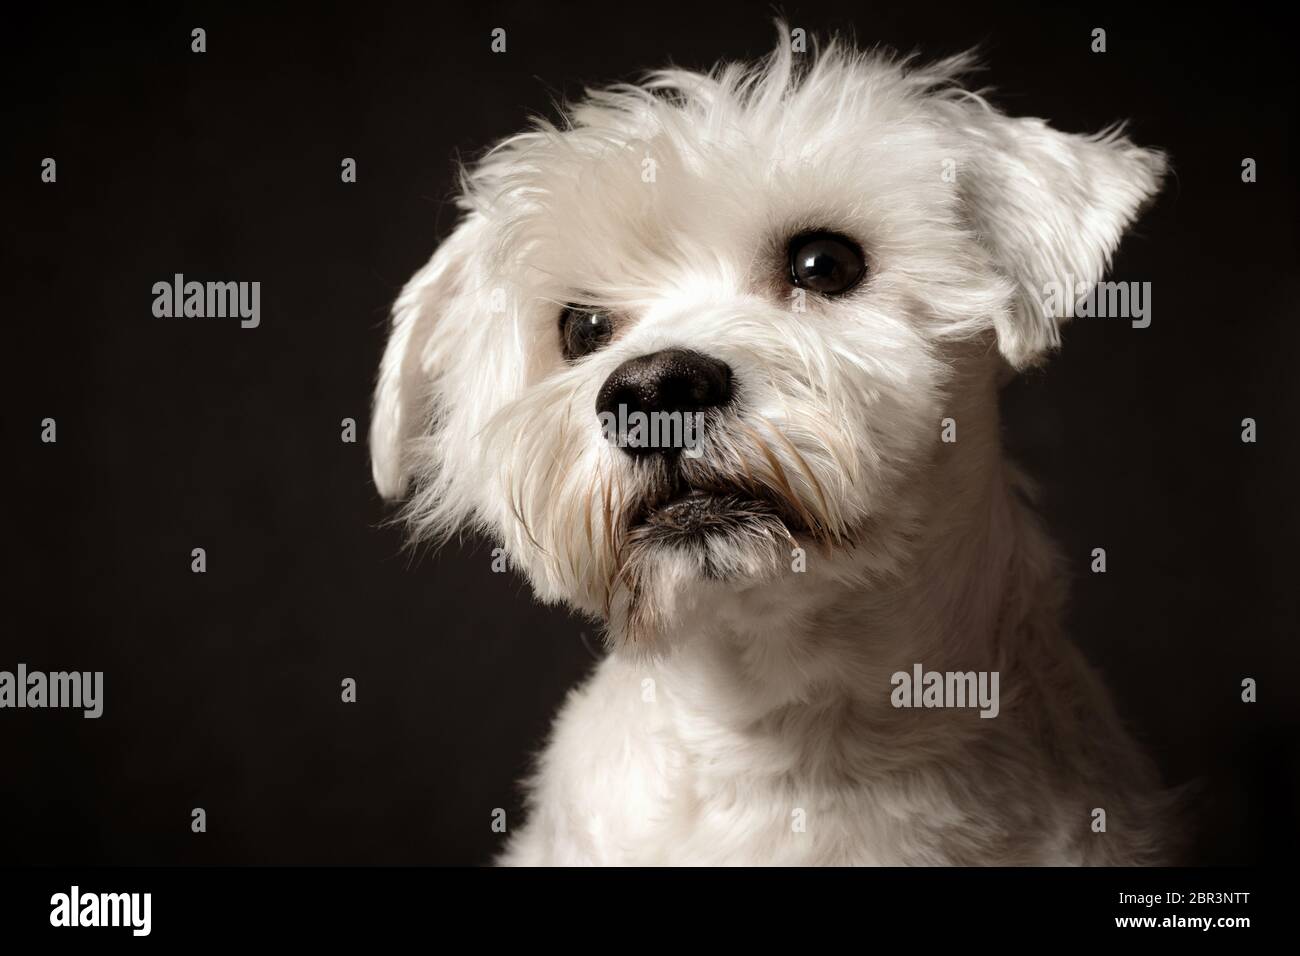 Animal portrait of white schnauzer dog on dark gray background. Stock Photo